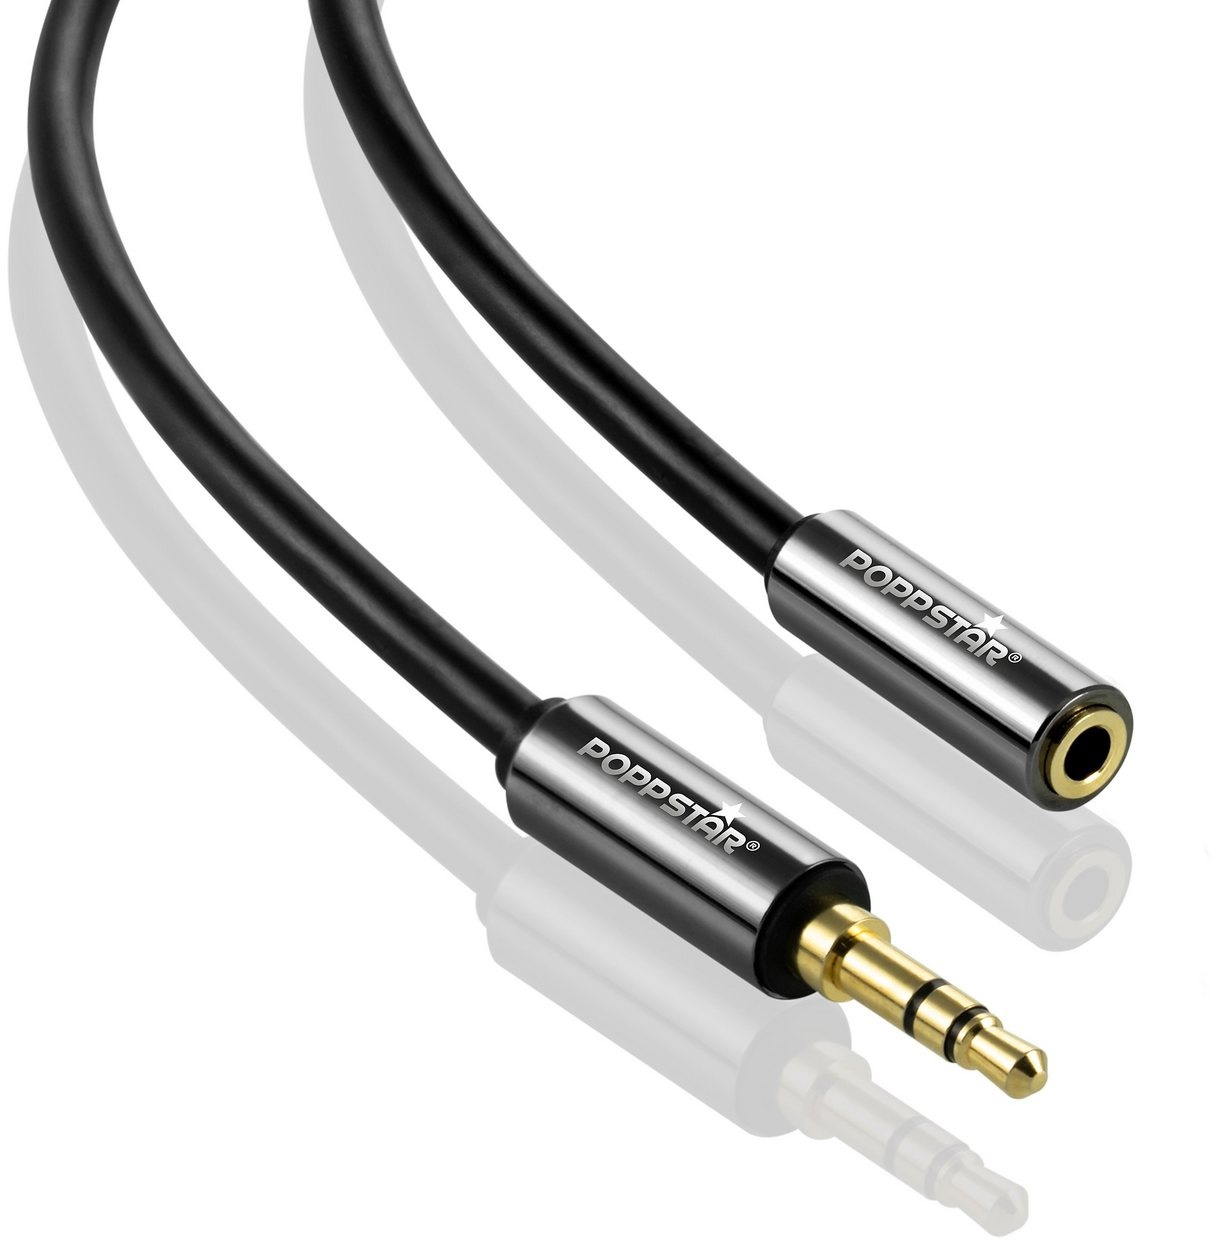 Poppstar Audio Kabel Klinke 3,5mm Klinkenkabel Stecker auf Buchse Audio-Kabel, 3,5-mm-Klinke, 3,5-mm-Klinke (200 cm), Verlängerungskabel für Kopfhörer Smartphone MP3-Player Kfz Autoradio